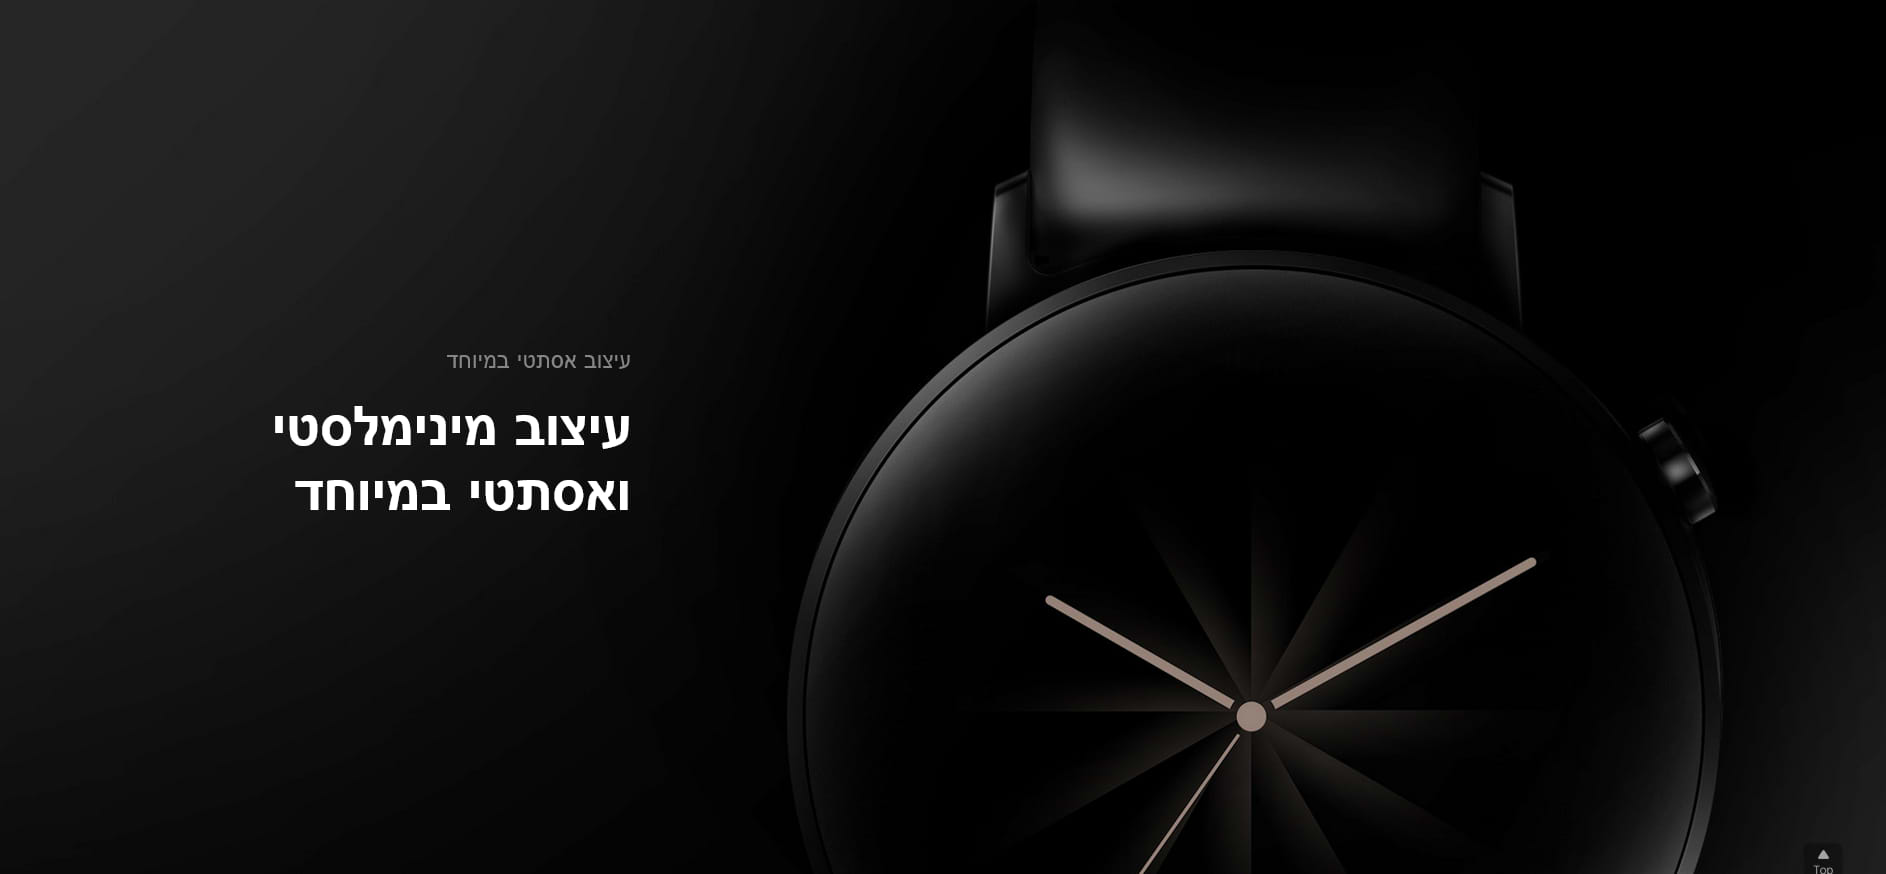 שעון חכם Huawei Watch GT 2 46mm - צבע שחור שנה אחריות ע"י היבואן הרשמי